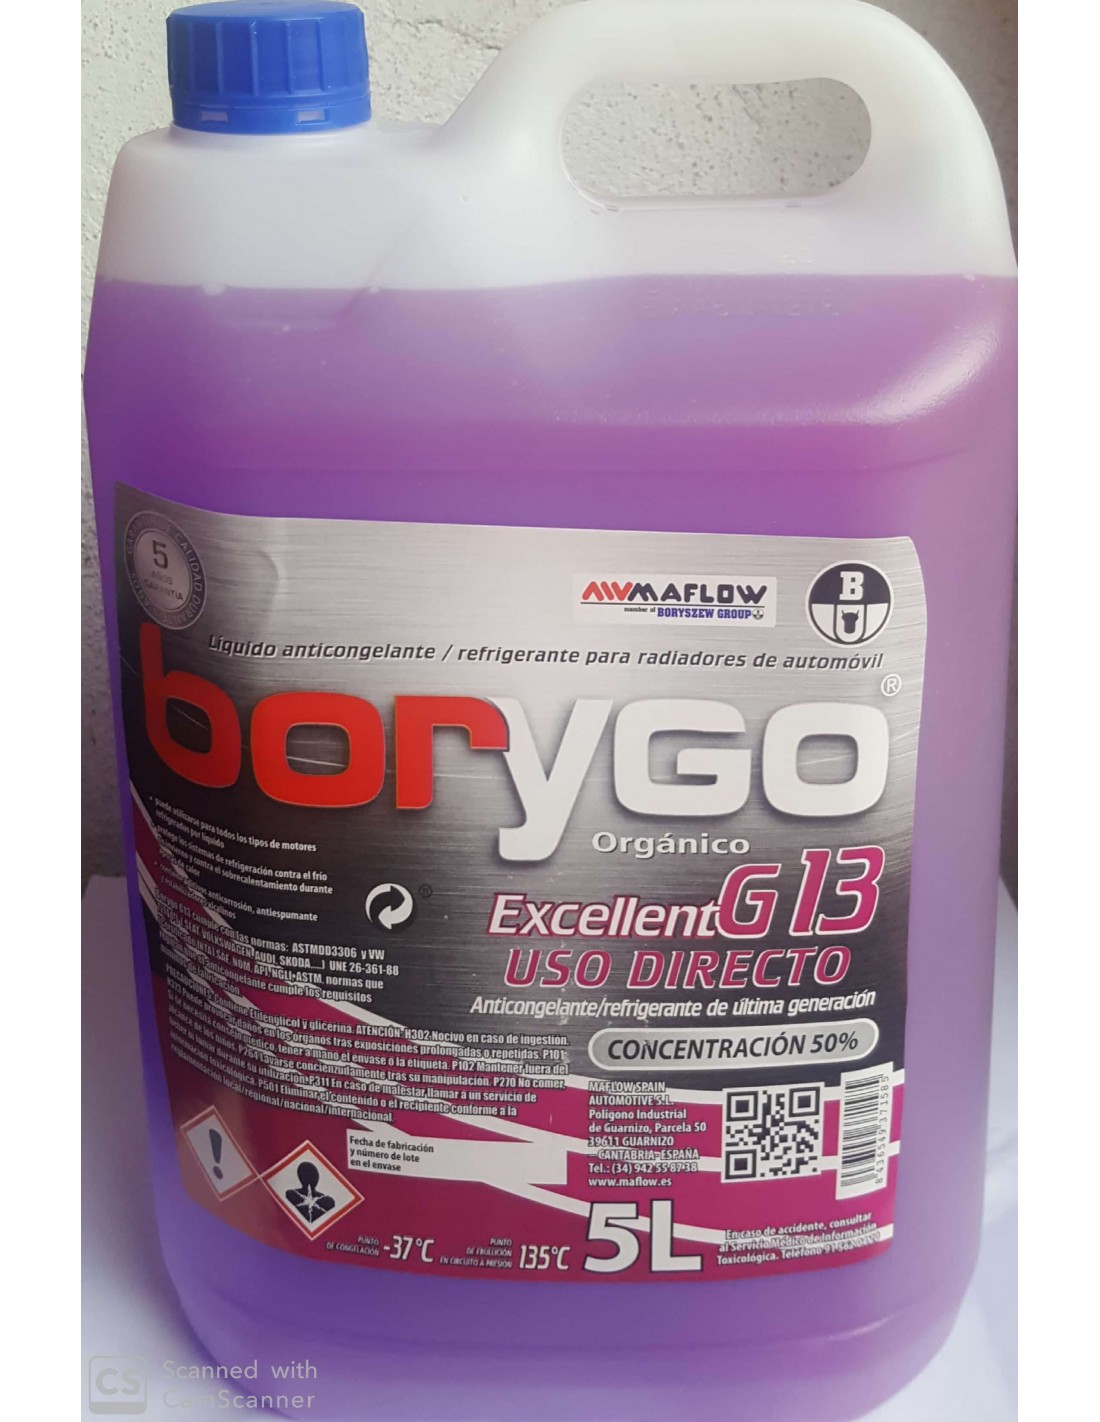 Anticongelante Refrigerante violeta Borygo Excellent G13 50% 5L